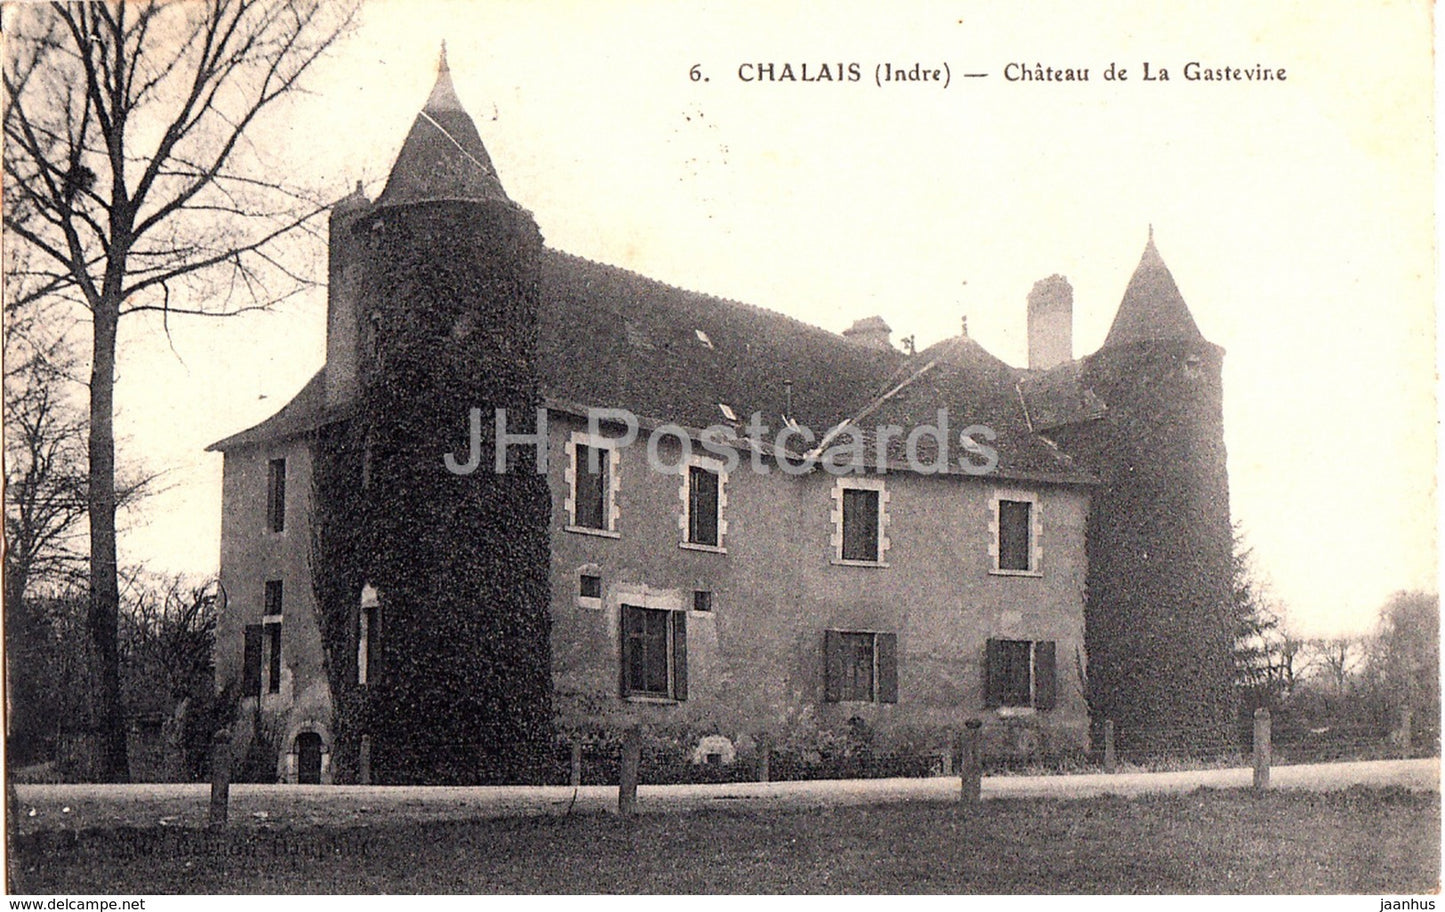 Chalais - Chateau de La Gastevine - castle - 6 - old postcard - 1920 - France - used - JH Postcards